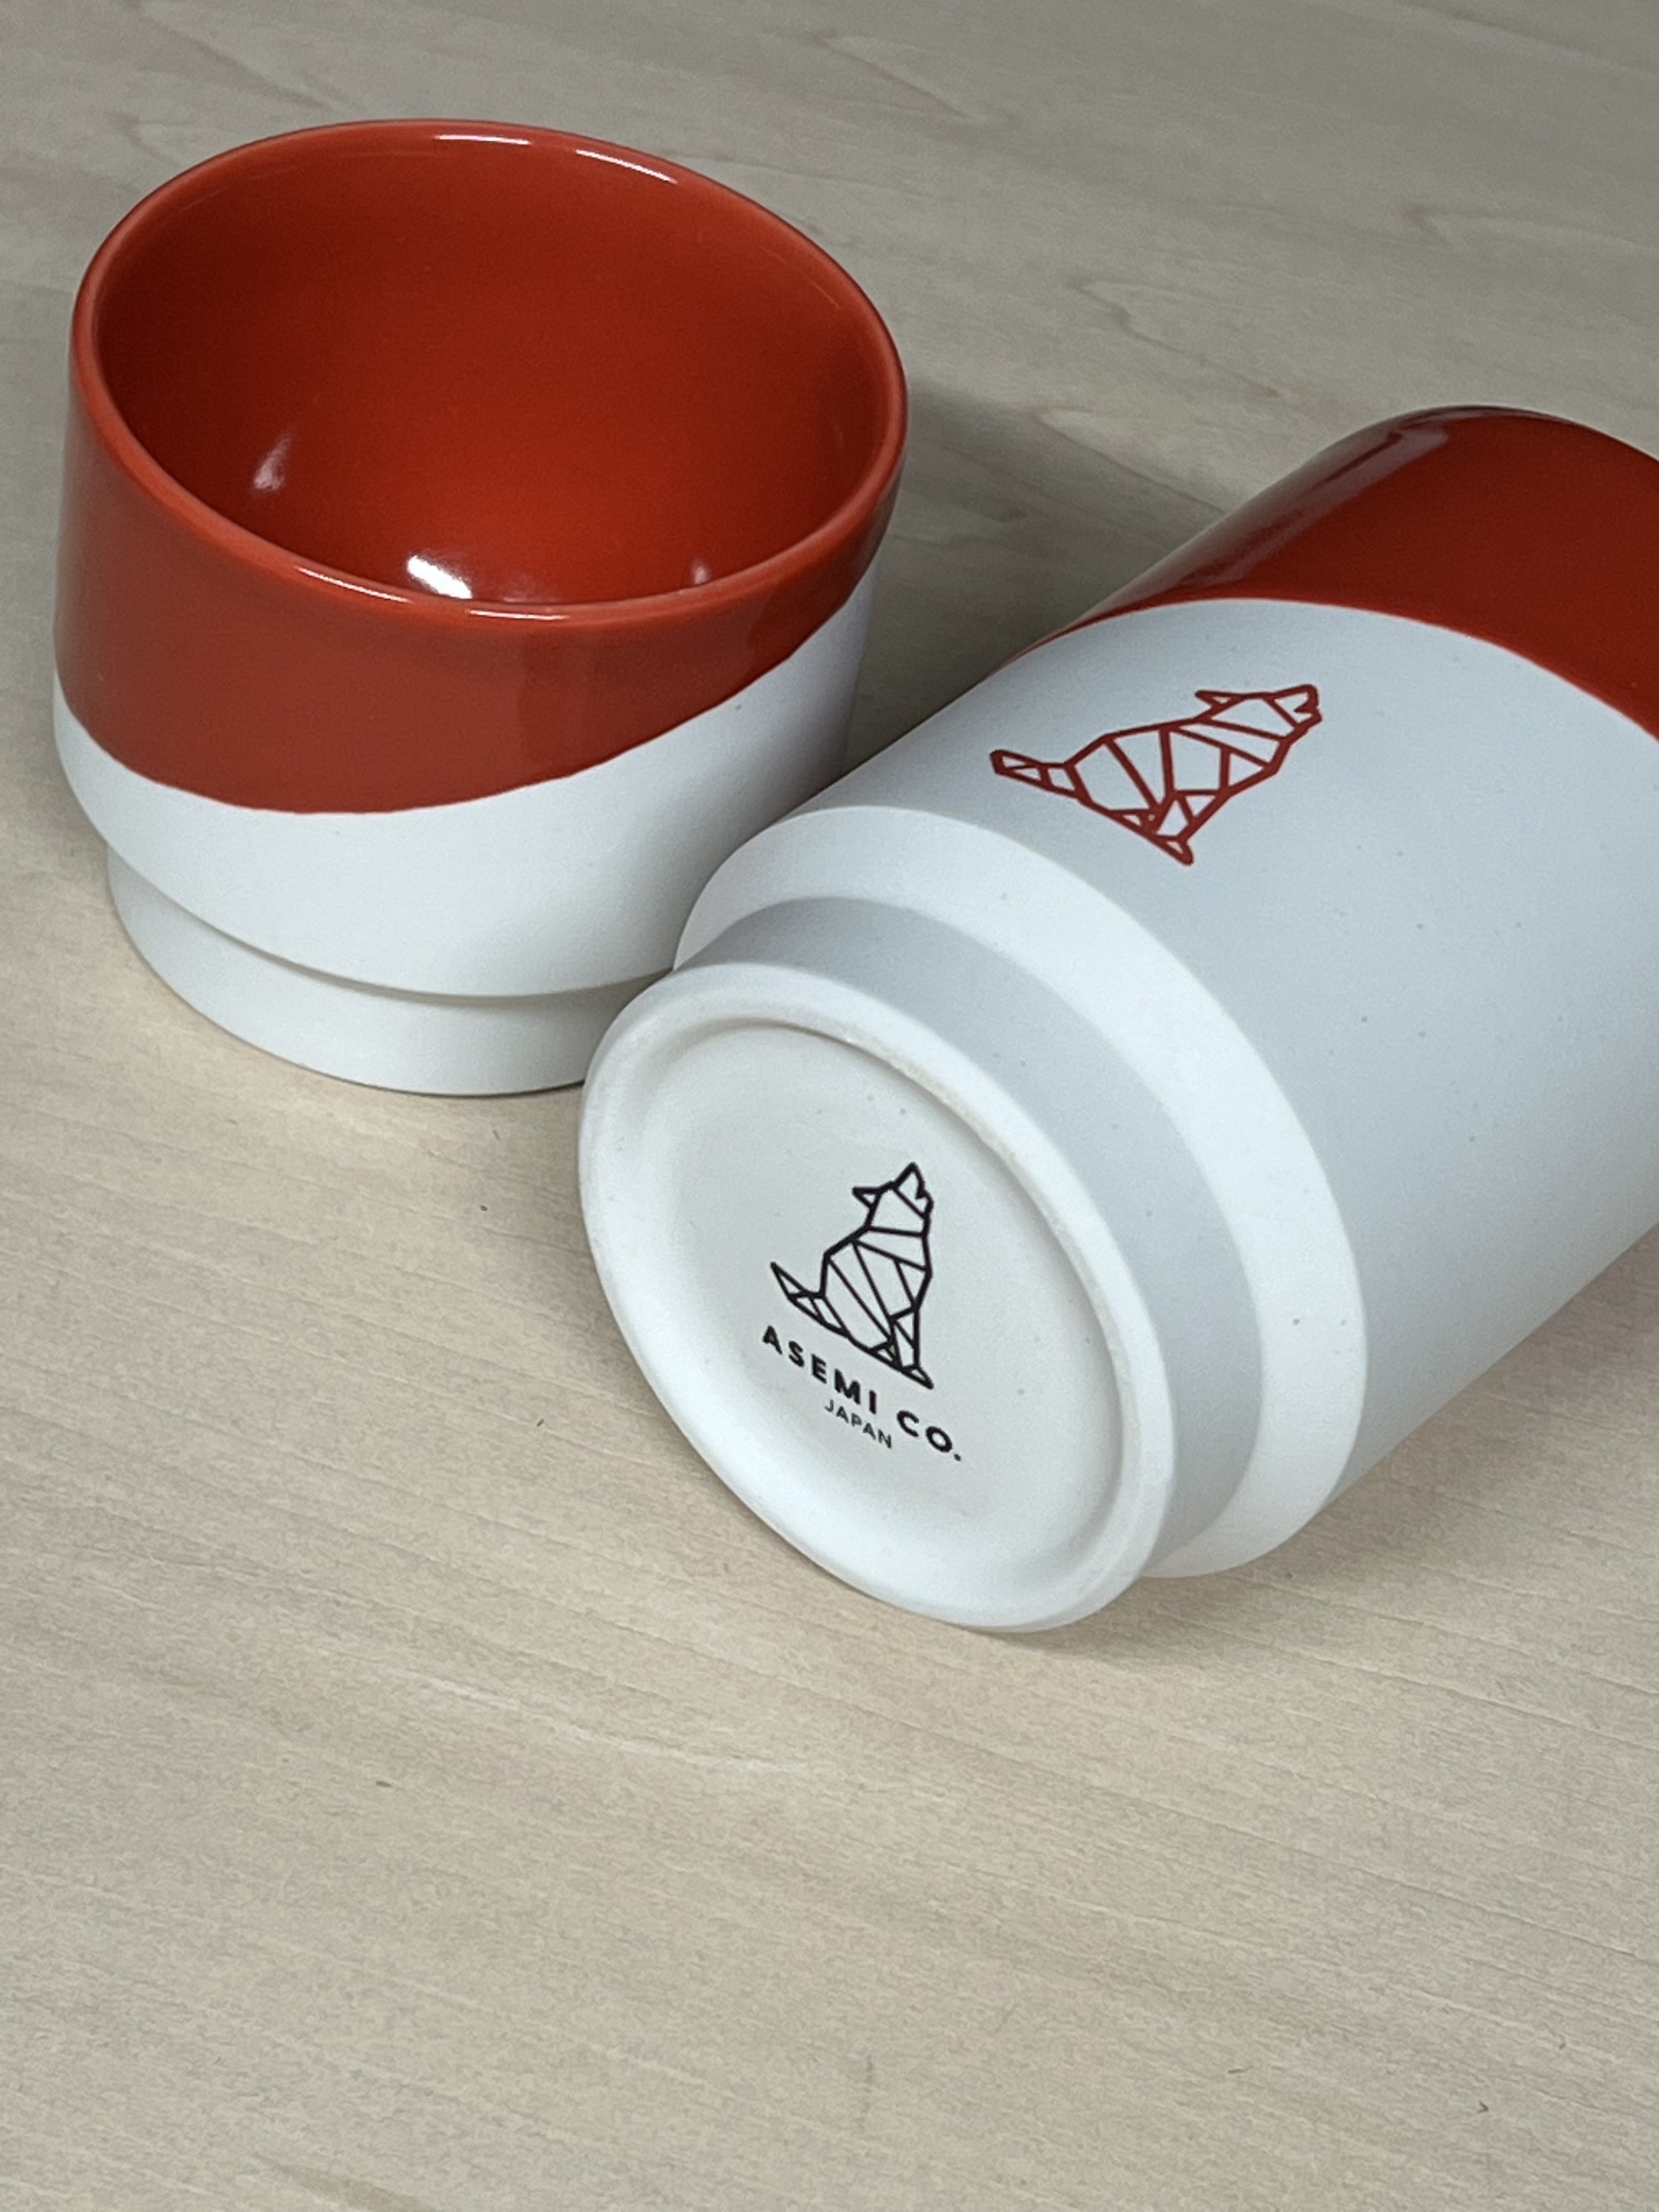 Hasami-yaki Porcelain Cups for Charlie Oscar, Lithuania